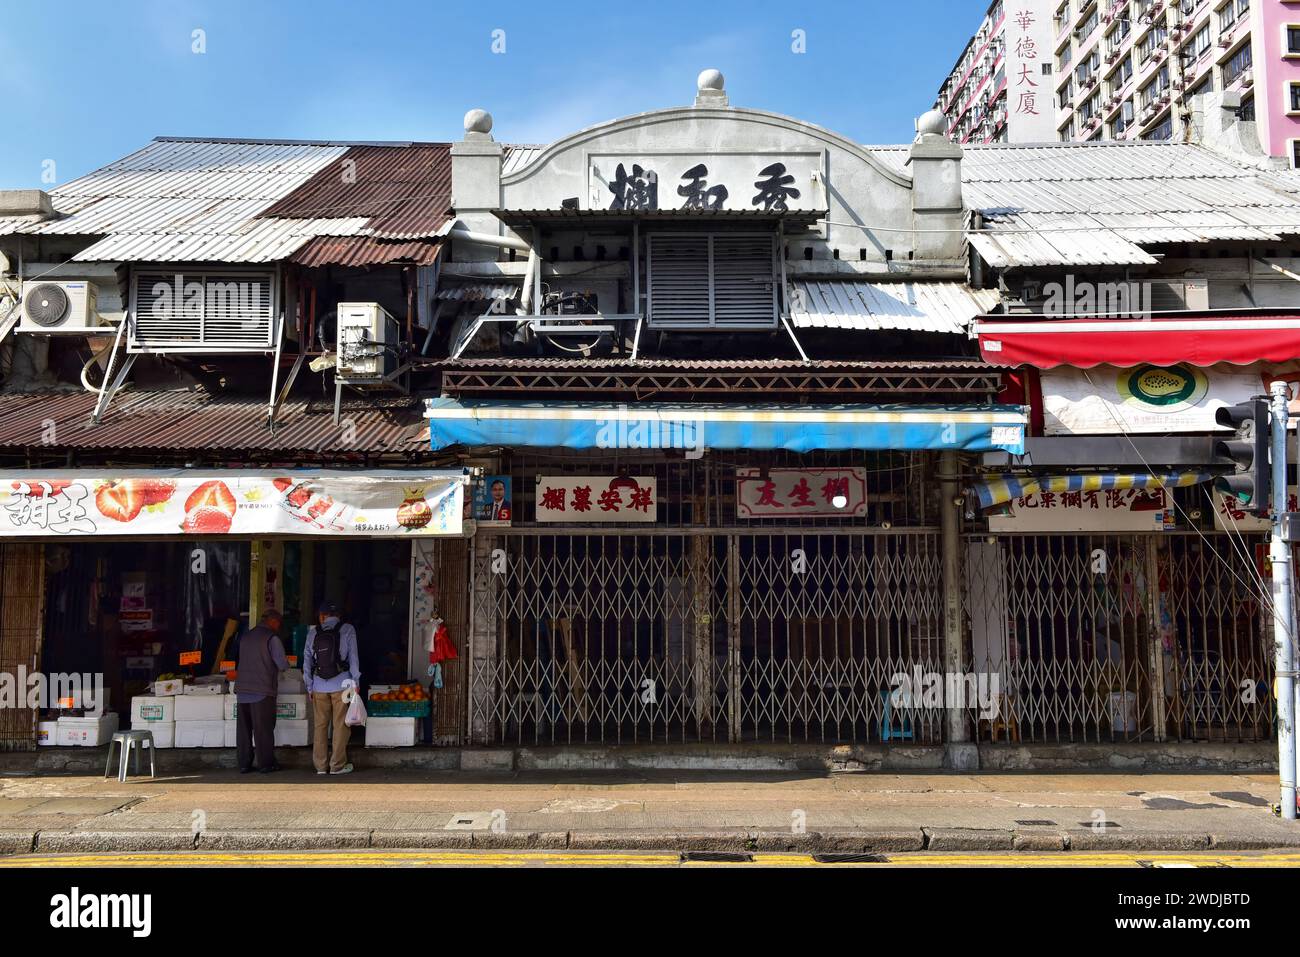 Yau Ma Tei Obstmarkt, seit 1913. Kowloon, Hongkong. Alte Ladenschilder auf der Fassade von mehrstöckigen Geschäften, Wohnräumen und Lagerräumen oben gemalt. Stockfoto